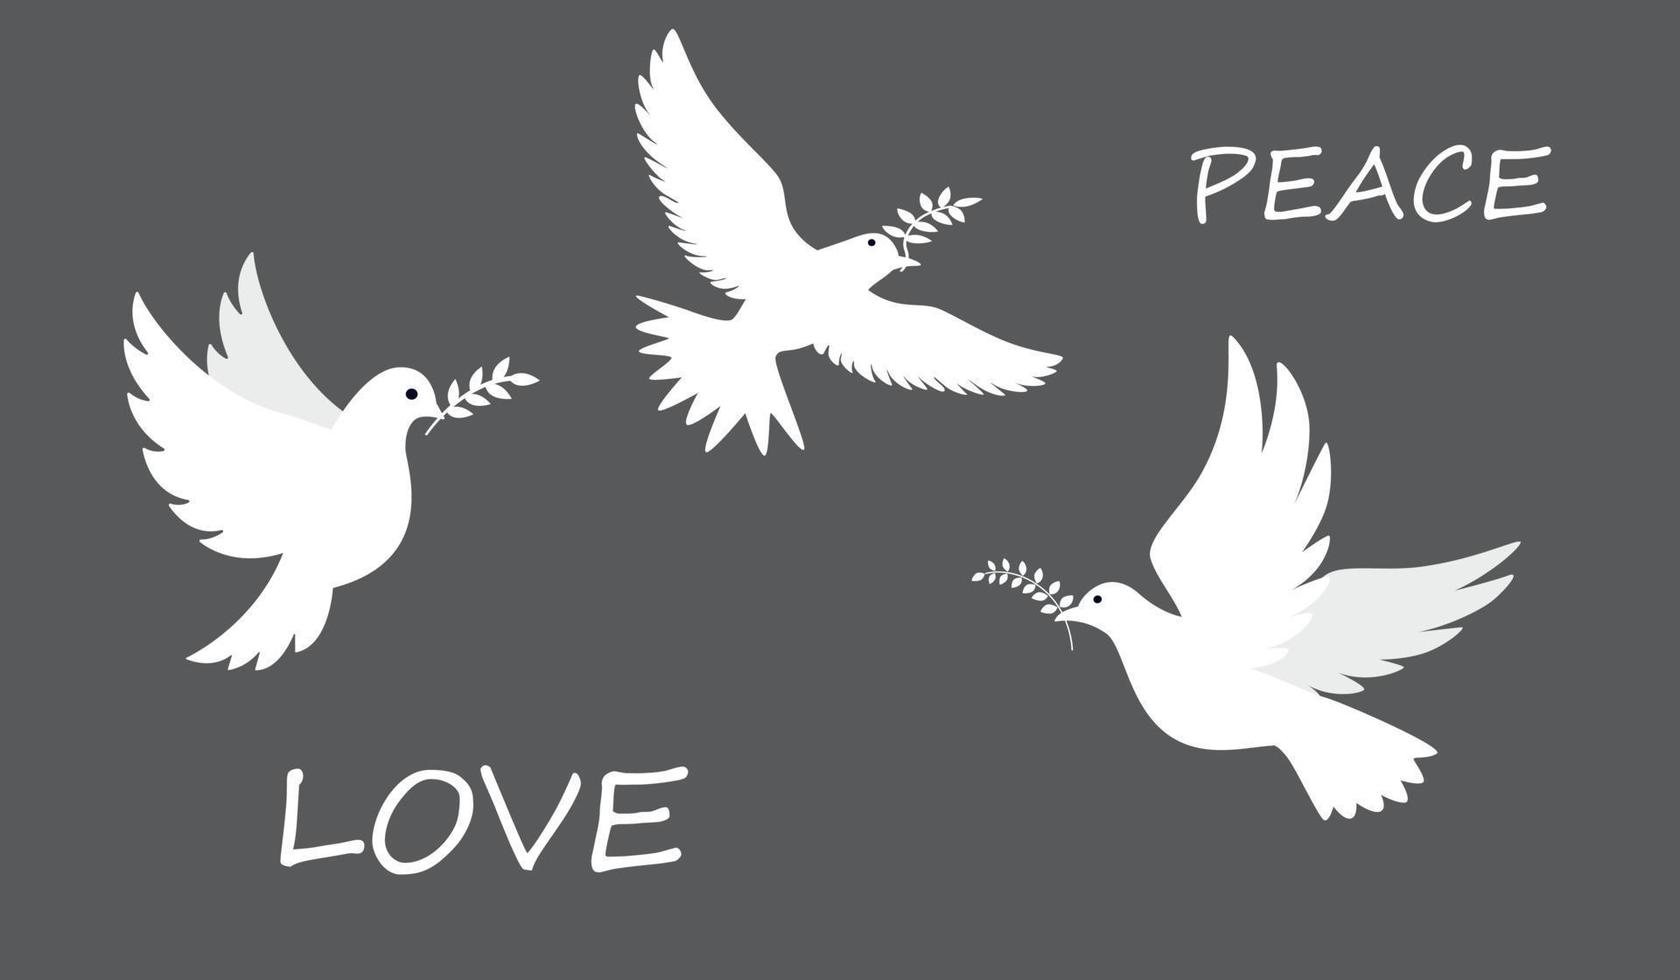 colomba della pace. uccelli in volo e in piedi con rami d'ulivo. pace e amore, libertà, nessun concetto di guerra. illustrazione vettoriale moderna disegnata a mano. tutti gli elementi sono isolati